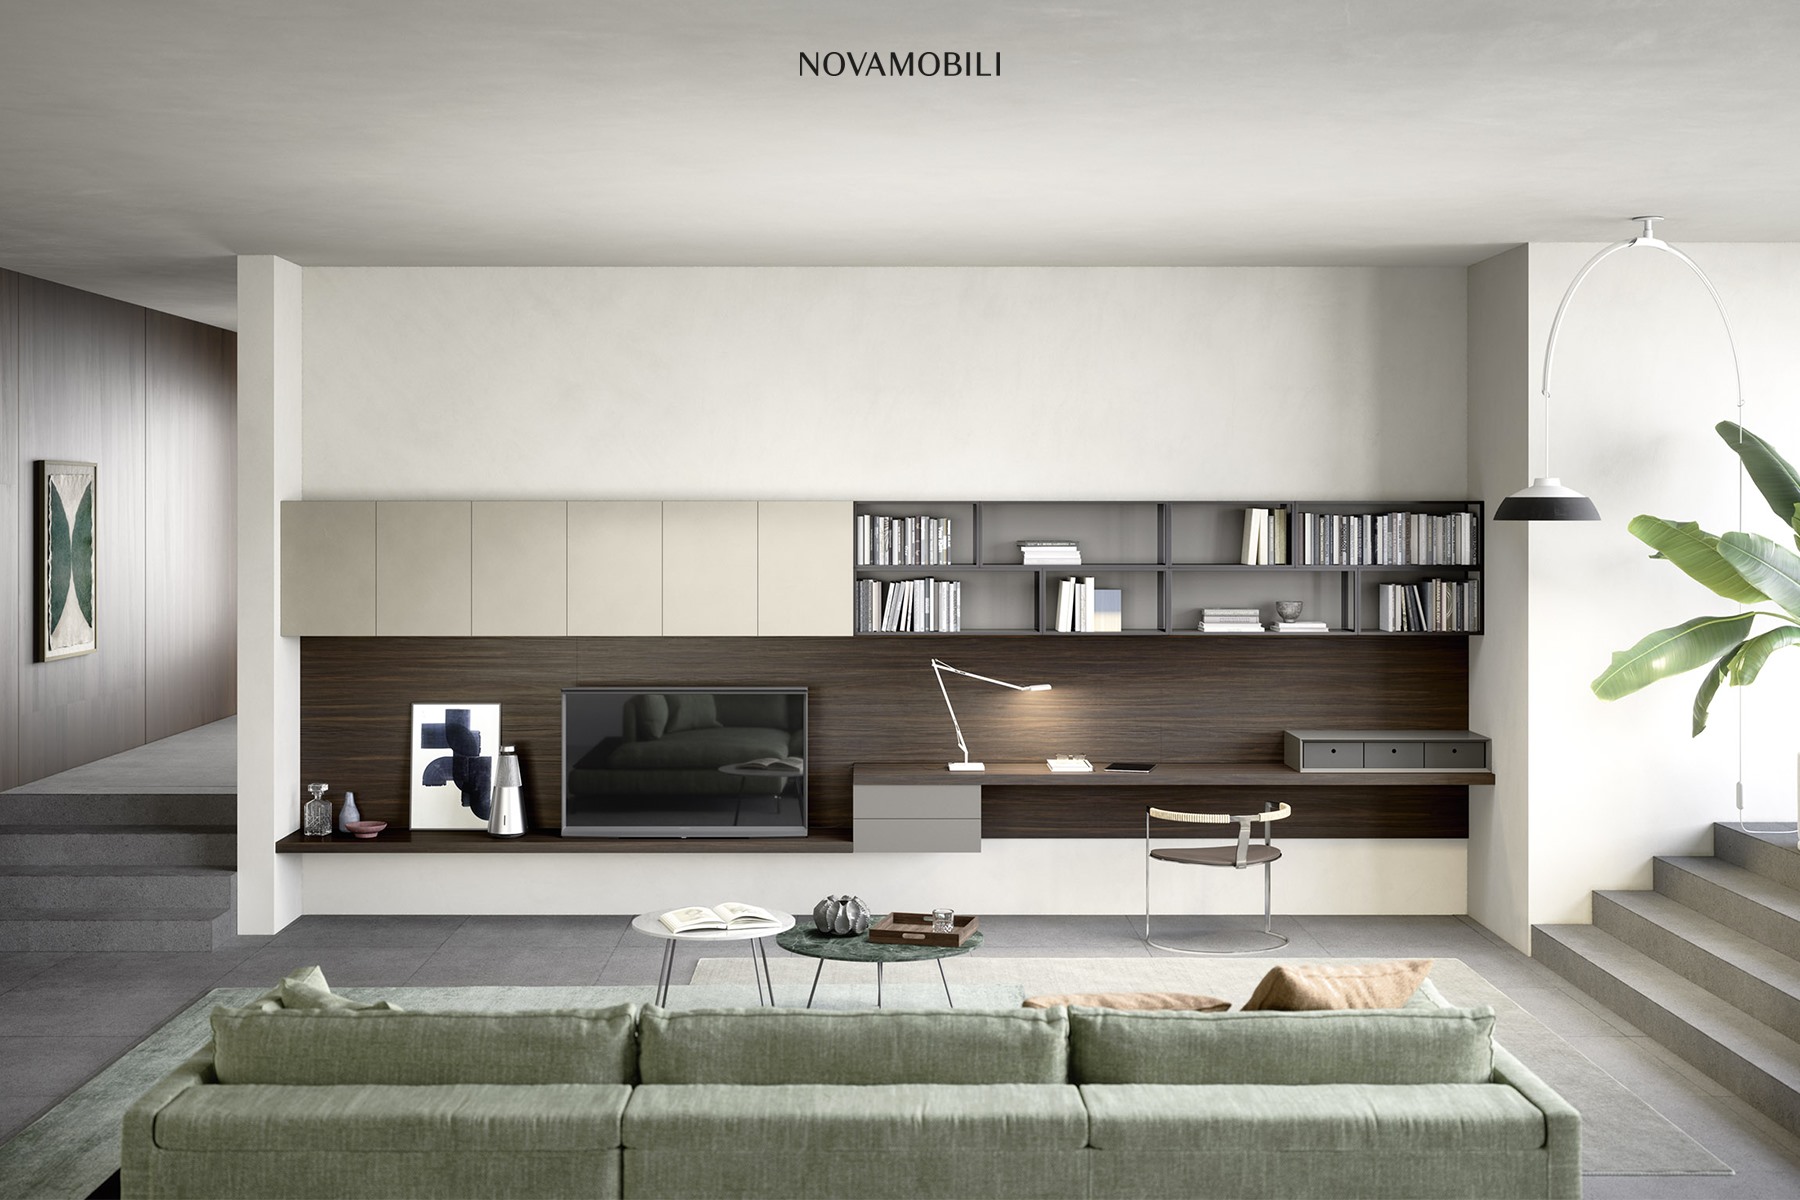 Arredamento casa moderno: Novamobili Spa – Conati Interiors